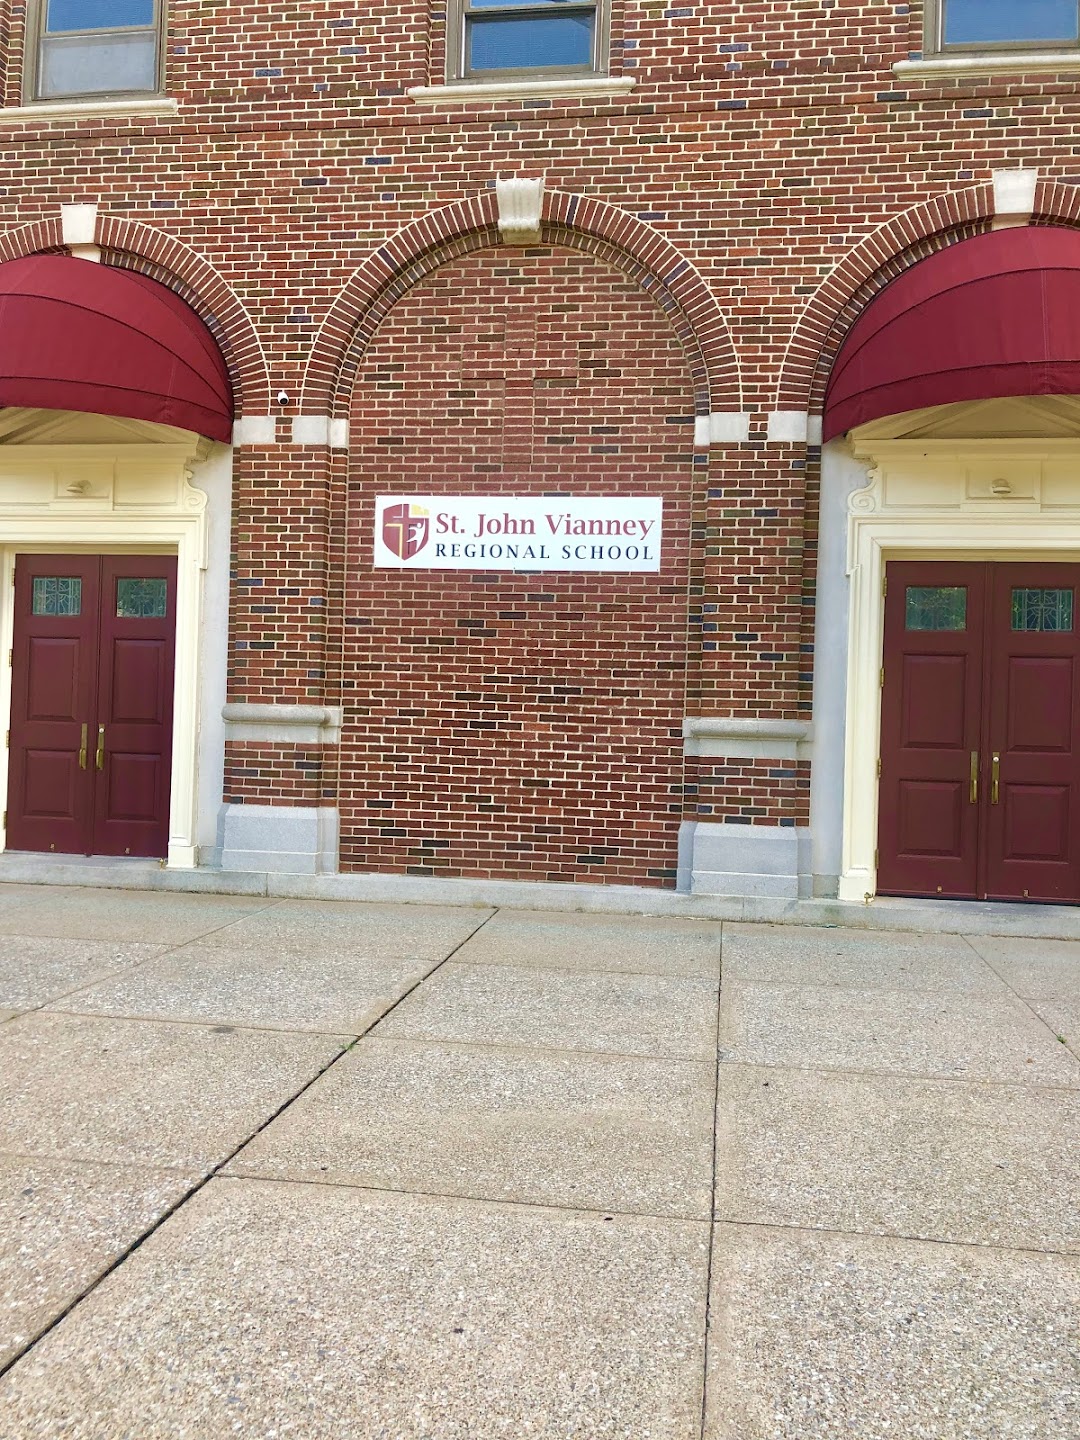 St. John Vianney Regional School